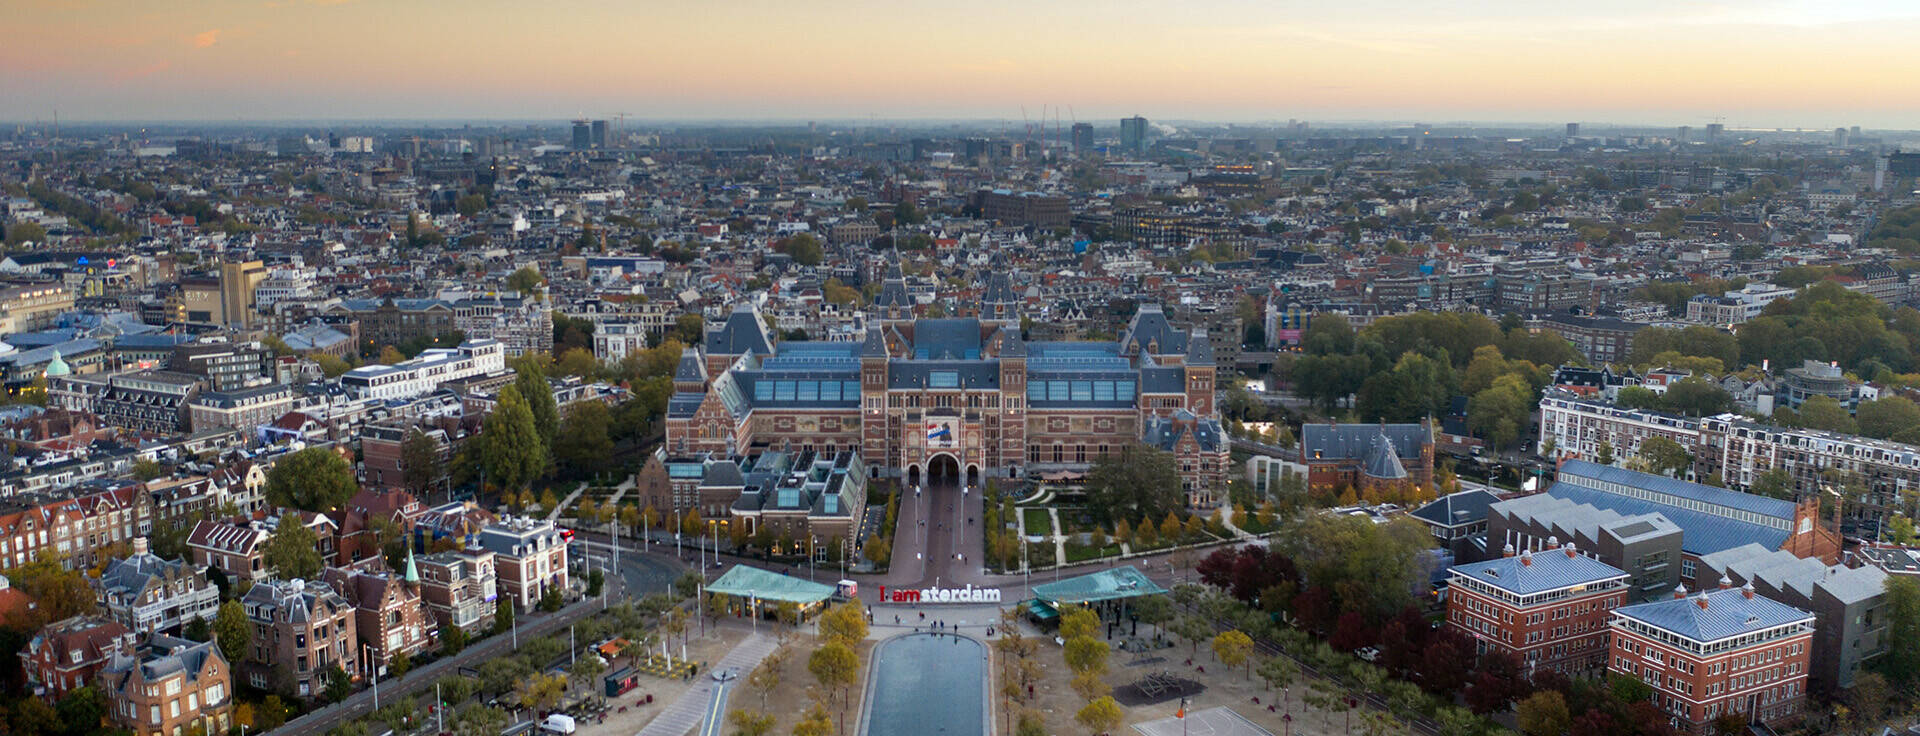 Luchtfoto Amsterdam met op de voorgrond het Rijksmuseum